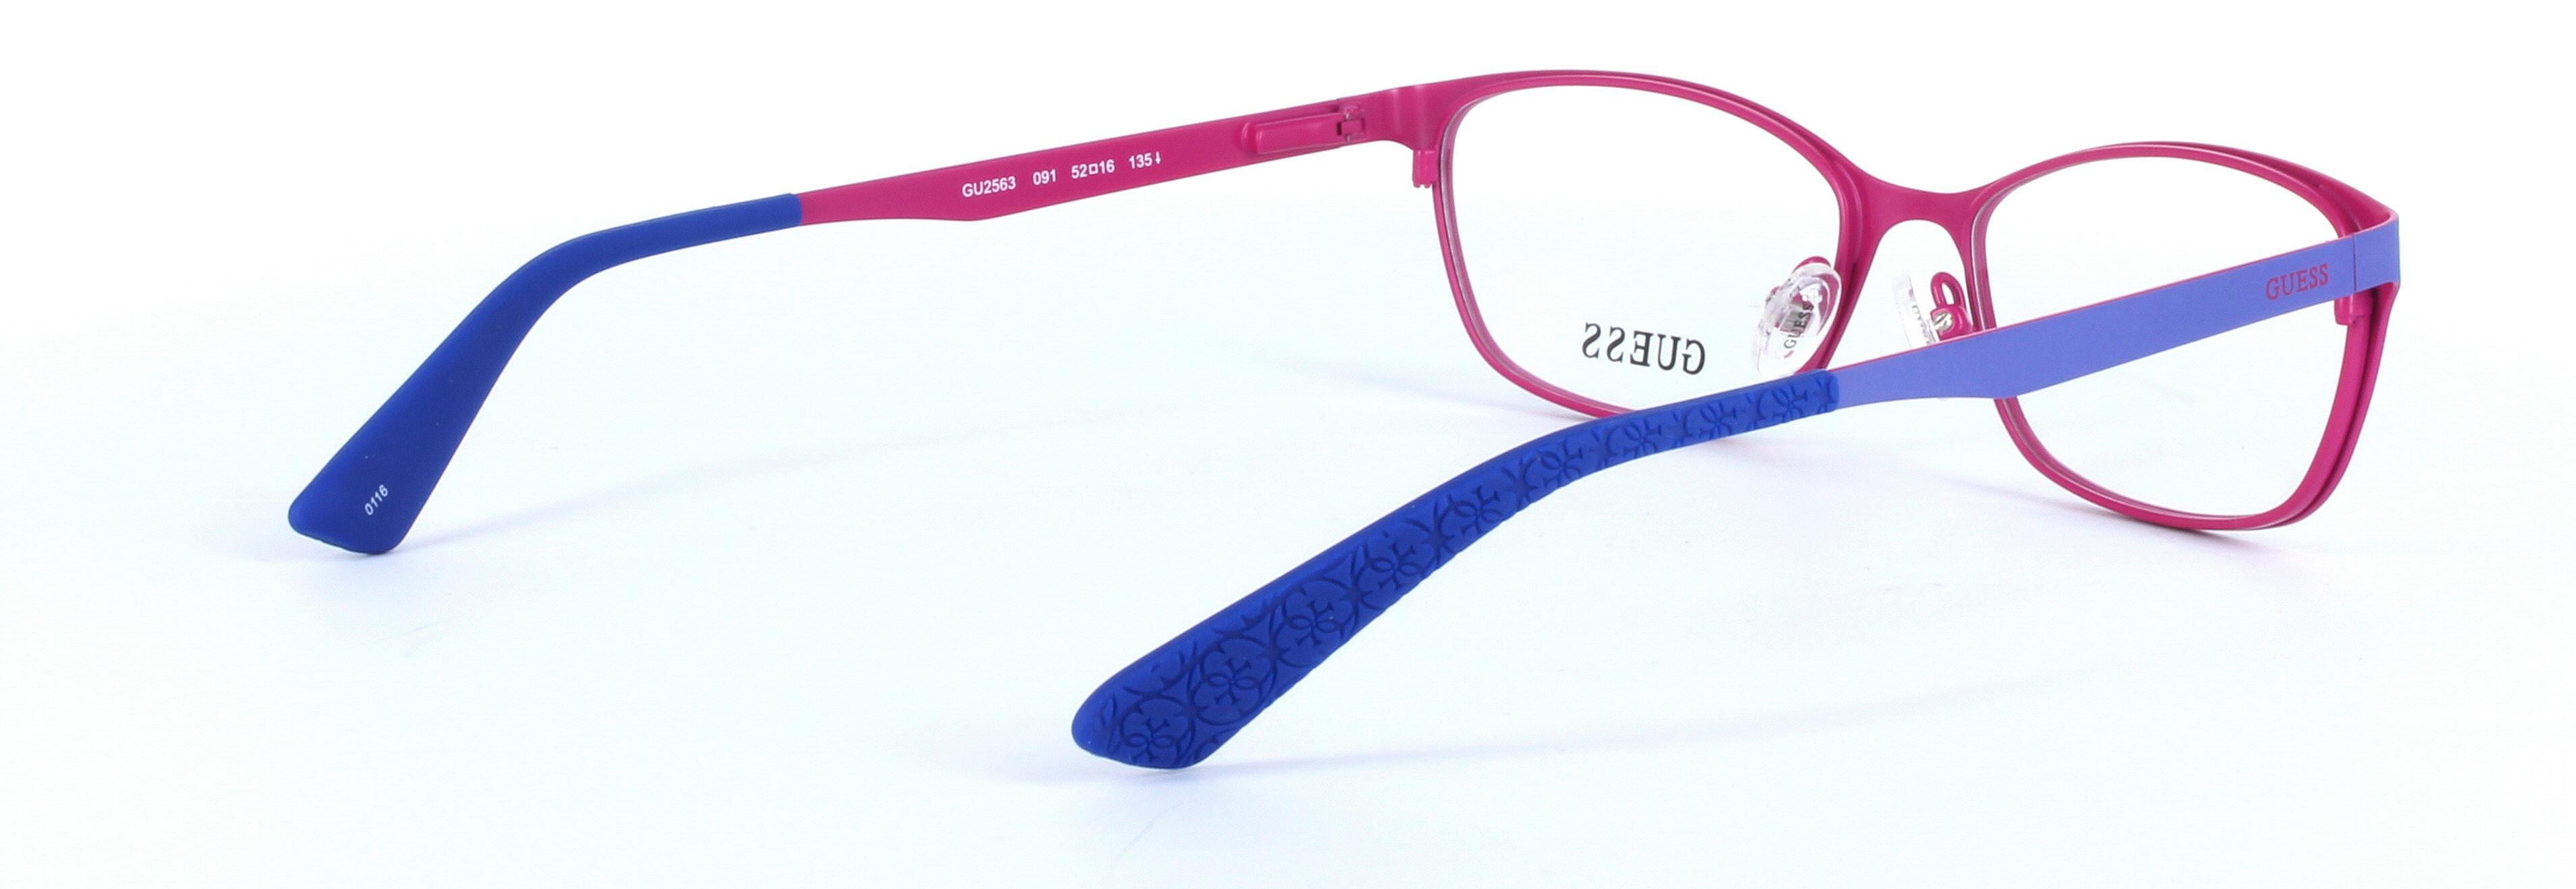 GUESS (GU2563-091) Blue Full Rim Oval Rectangular Metal Glasses - Image View 4